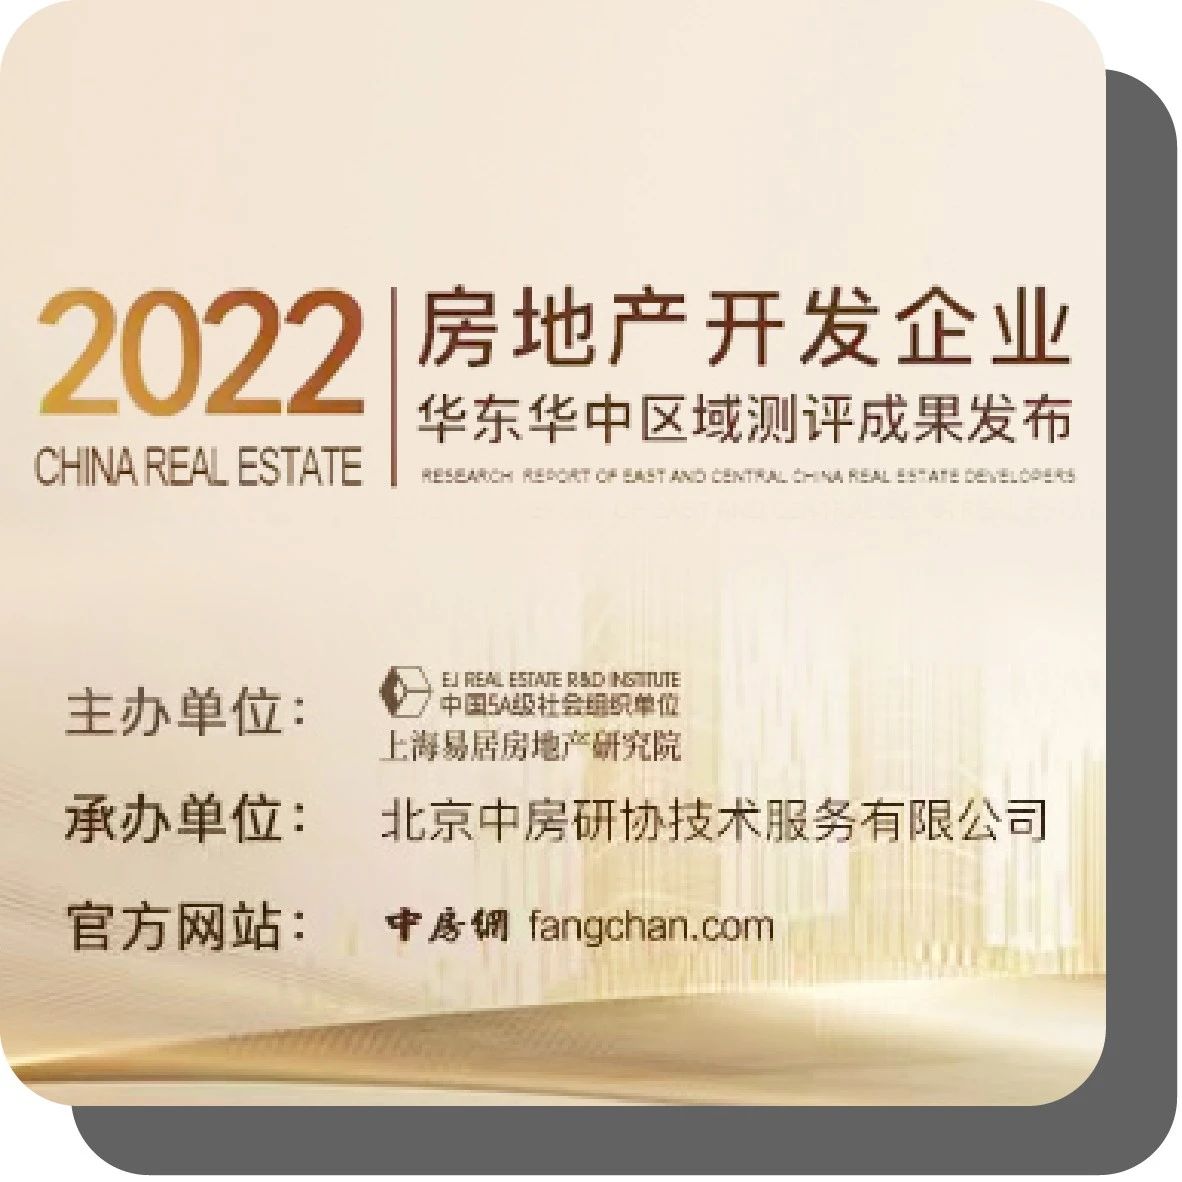 2022房地产开发企业华东华中区域测评成果揭晓